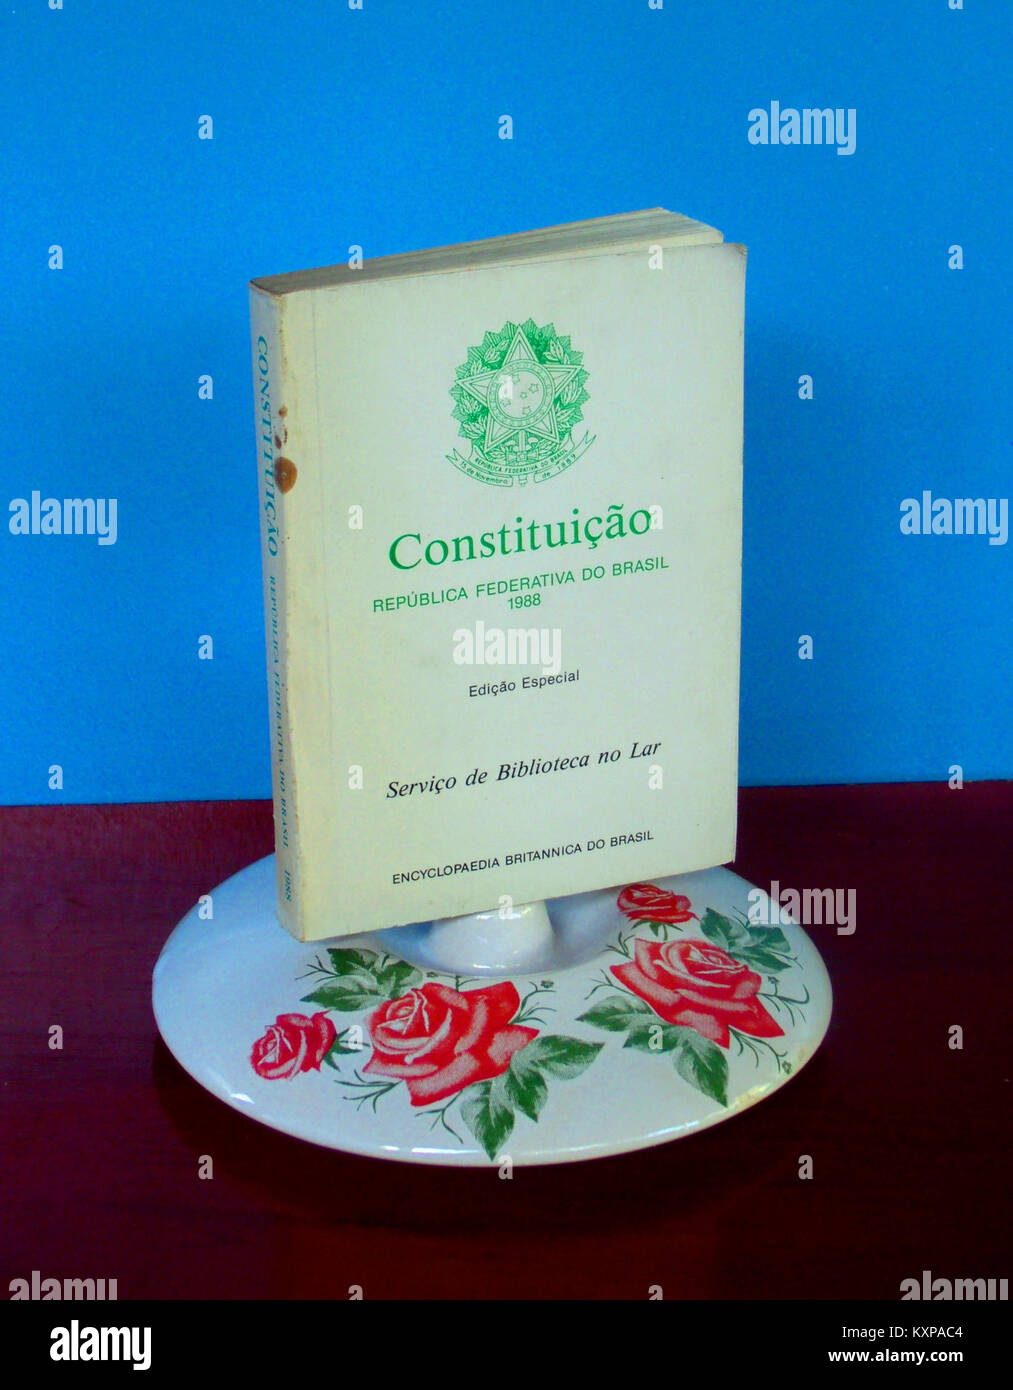 Constituição da República Federativa do Brasil 1988 (livro de bolso,exemplar especial pela Encyclopaedia Britannica do Brasil)1 Stock Photo